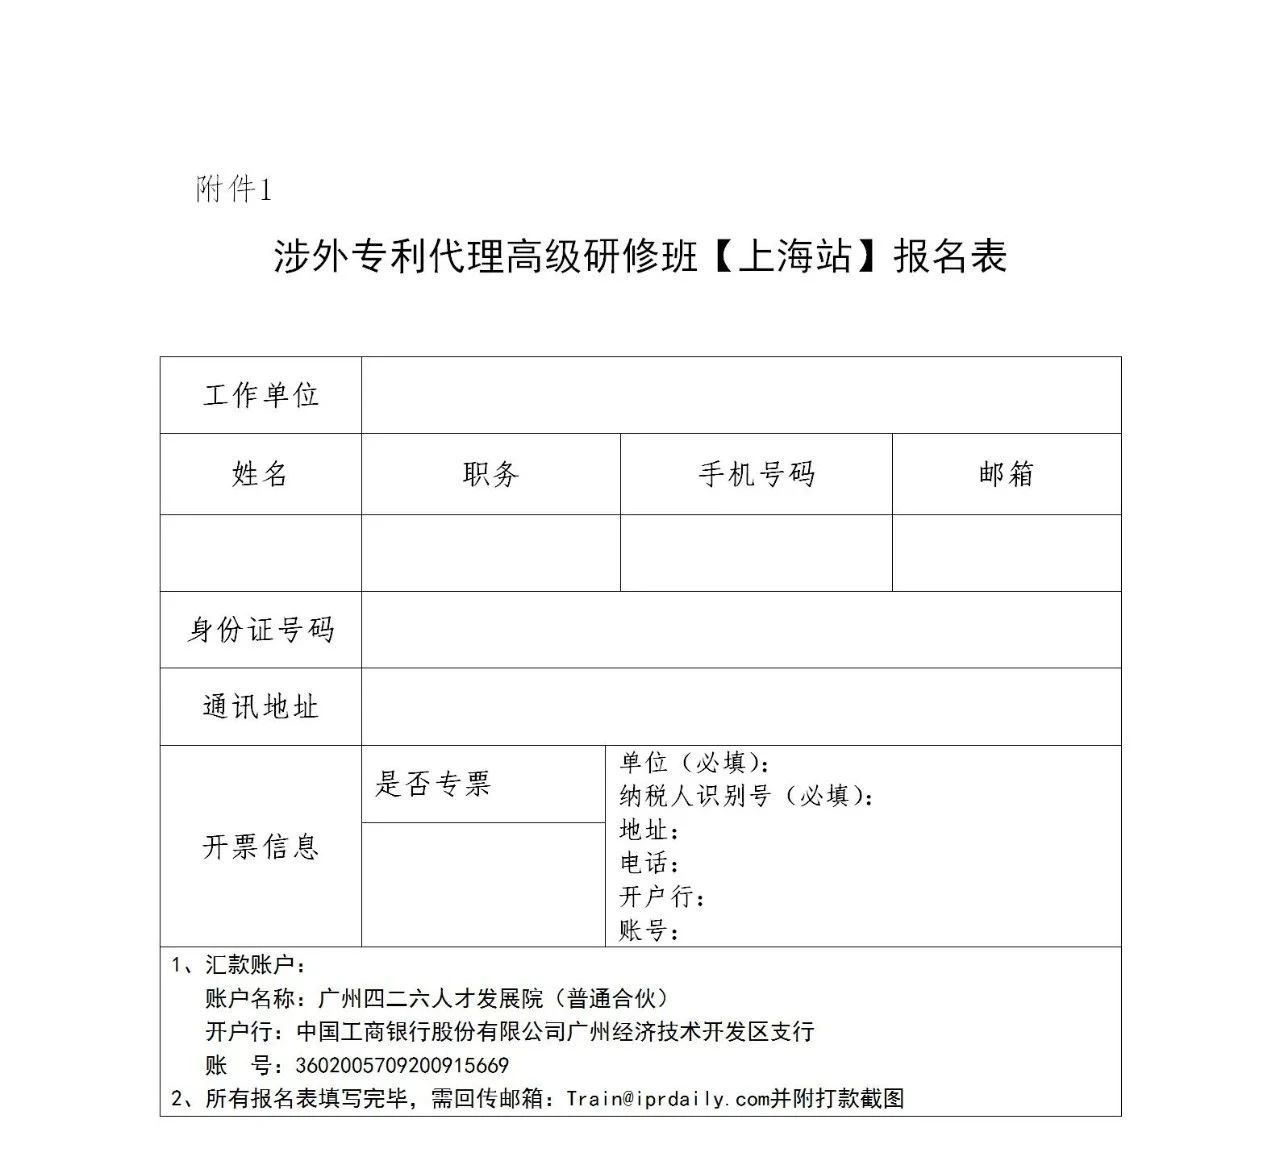 倒计时！2021年「涉外专利代理高级研修班【上海站】」即将举办！